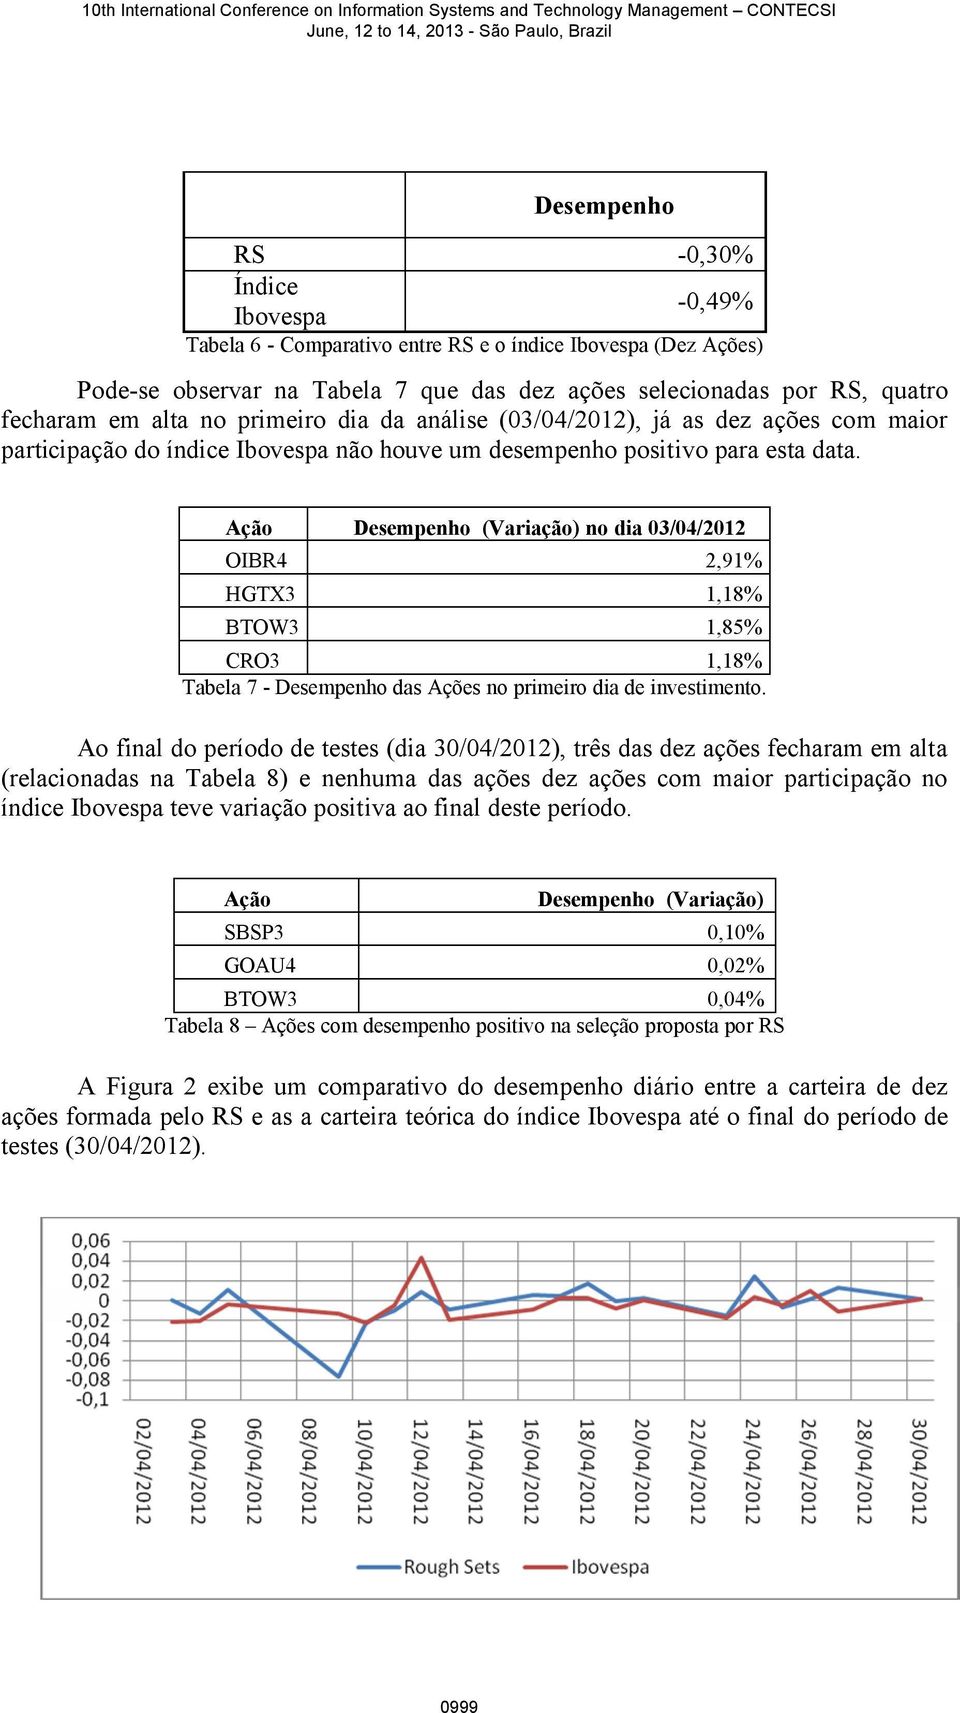 Ação Desempenho (Variação) no dia 03/04/2012 OIBR4 2,91% HGTX3 1,18% BTOW3 1,85% CRO3 1,18% Tabela 7 - Desempenho das Ações no primeiro dia de investimento.